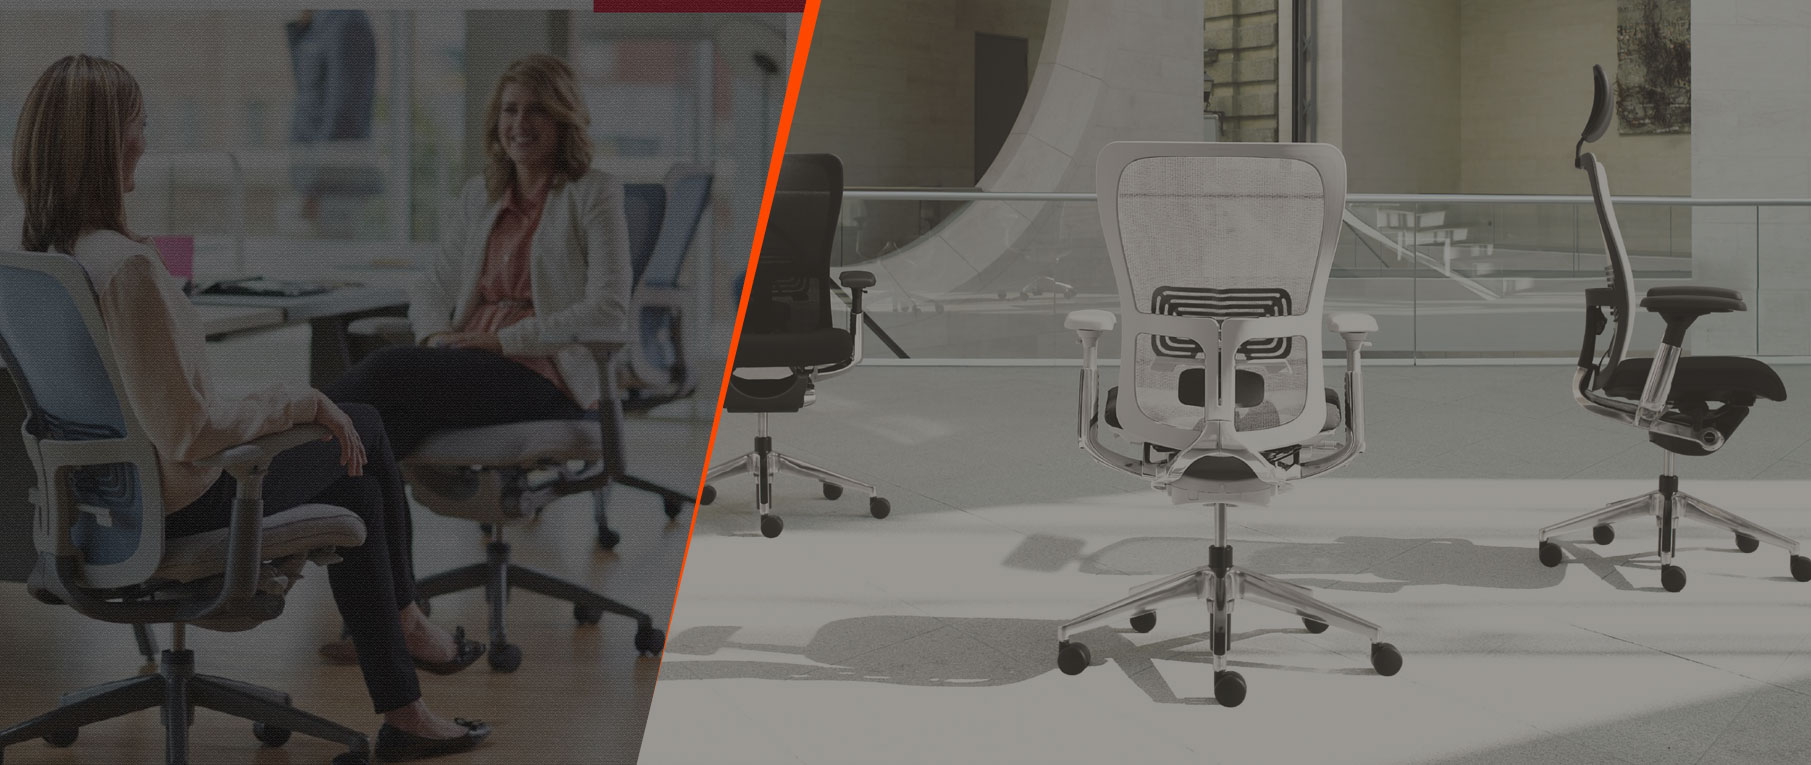 HAWORTH - cadeira ergonômicas de trabalho de alta performance para escritório, posto de trabalho, sala de reuniões,